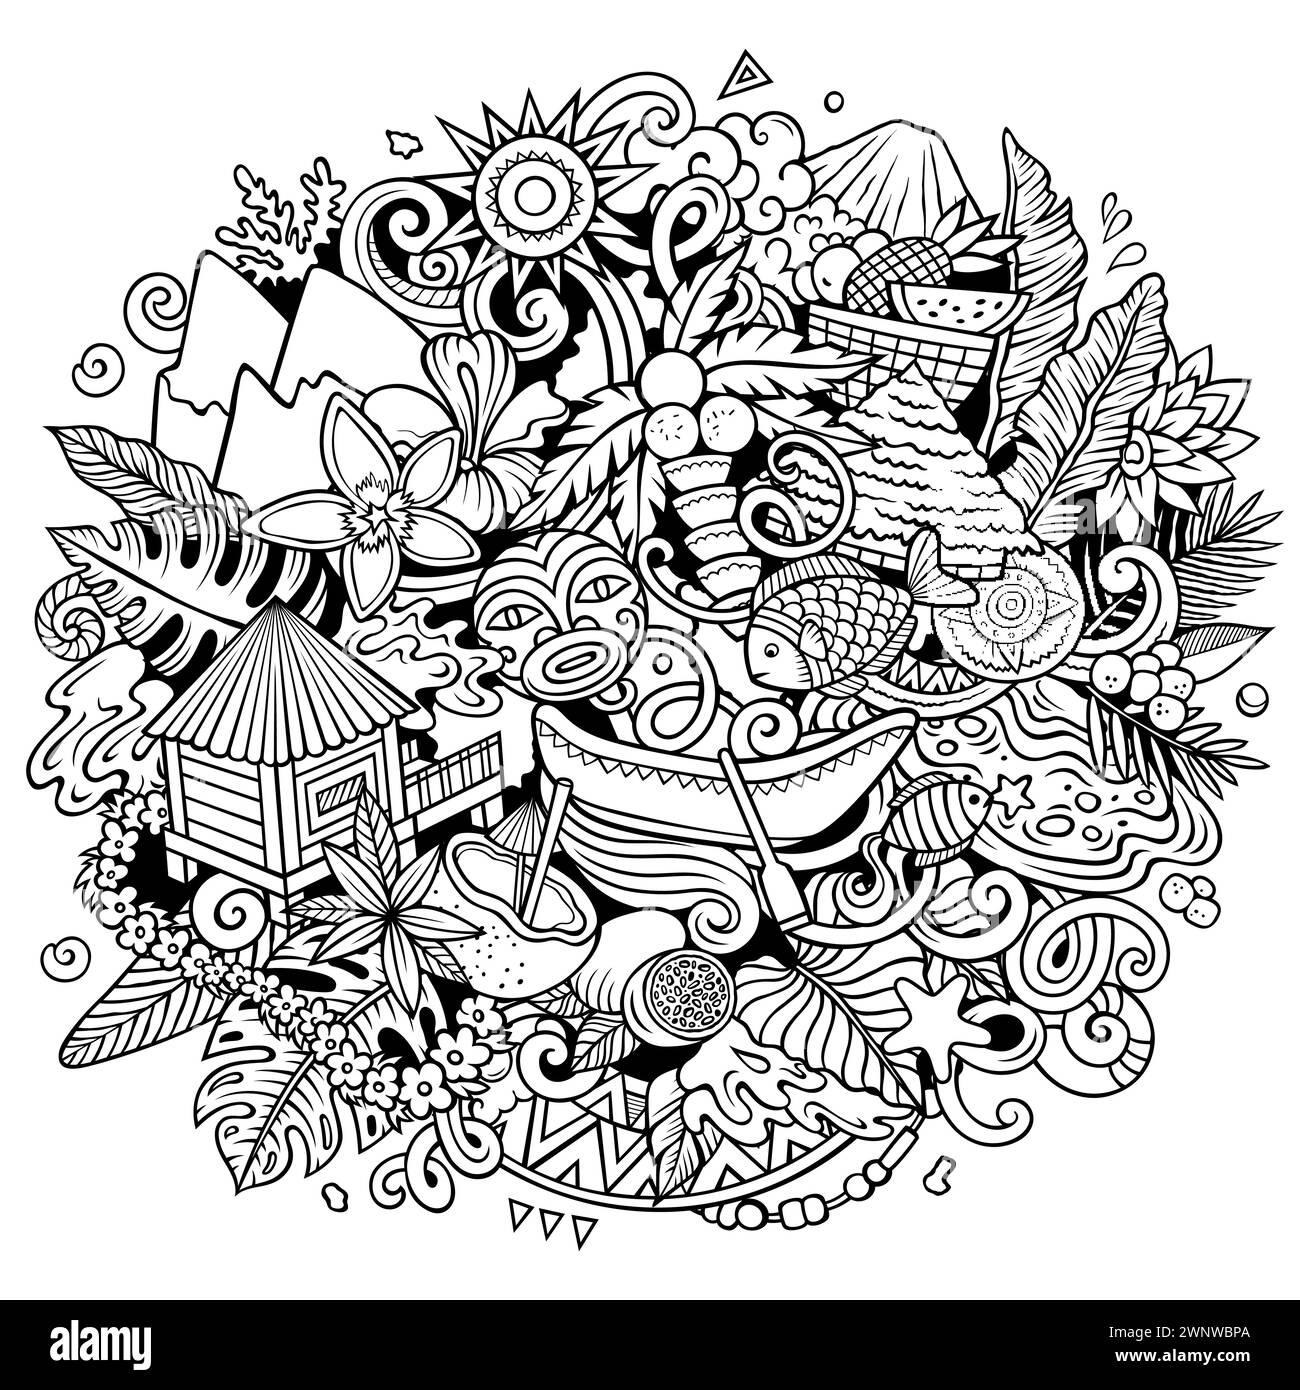 Tahiti dessin à la main dessin animé illustration doodle. Fond vectoriel amusant créatif avec des éléments et des objets de Polynésie française. Composition de dessin au trait Illustration de Vecteur